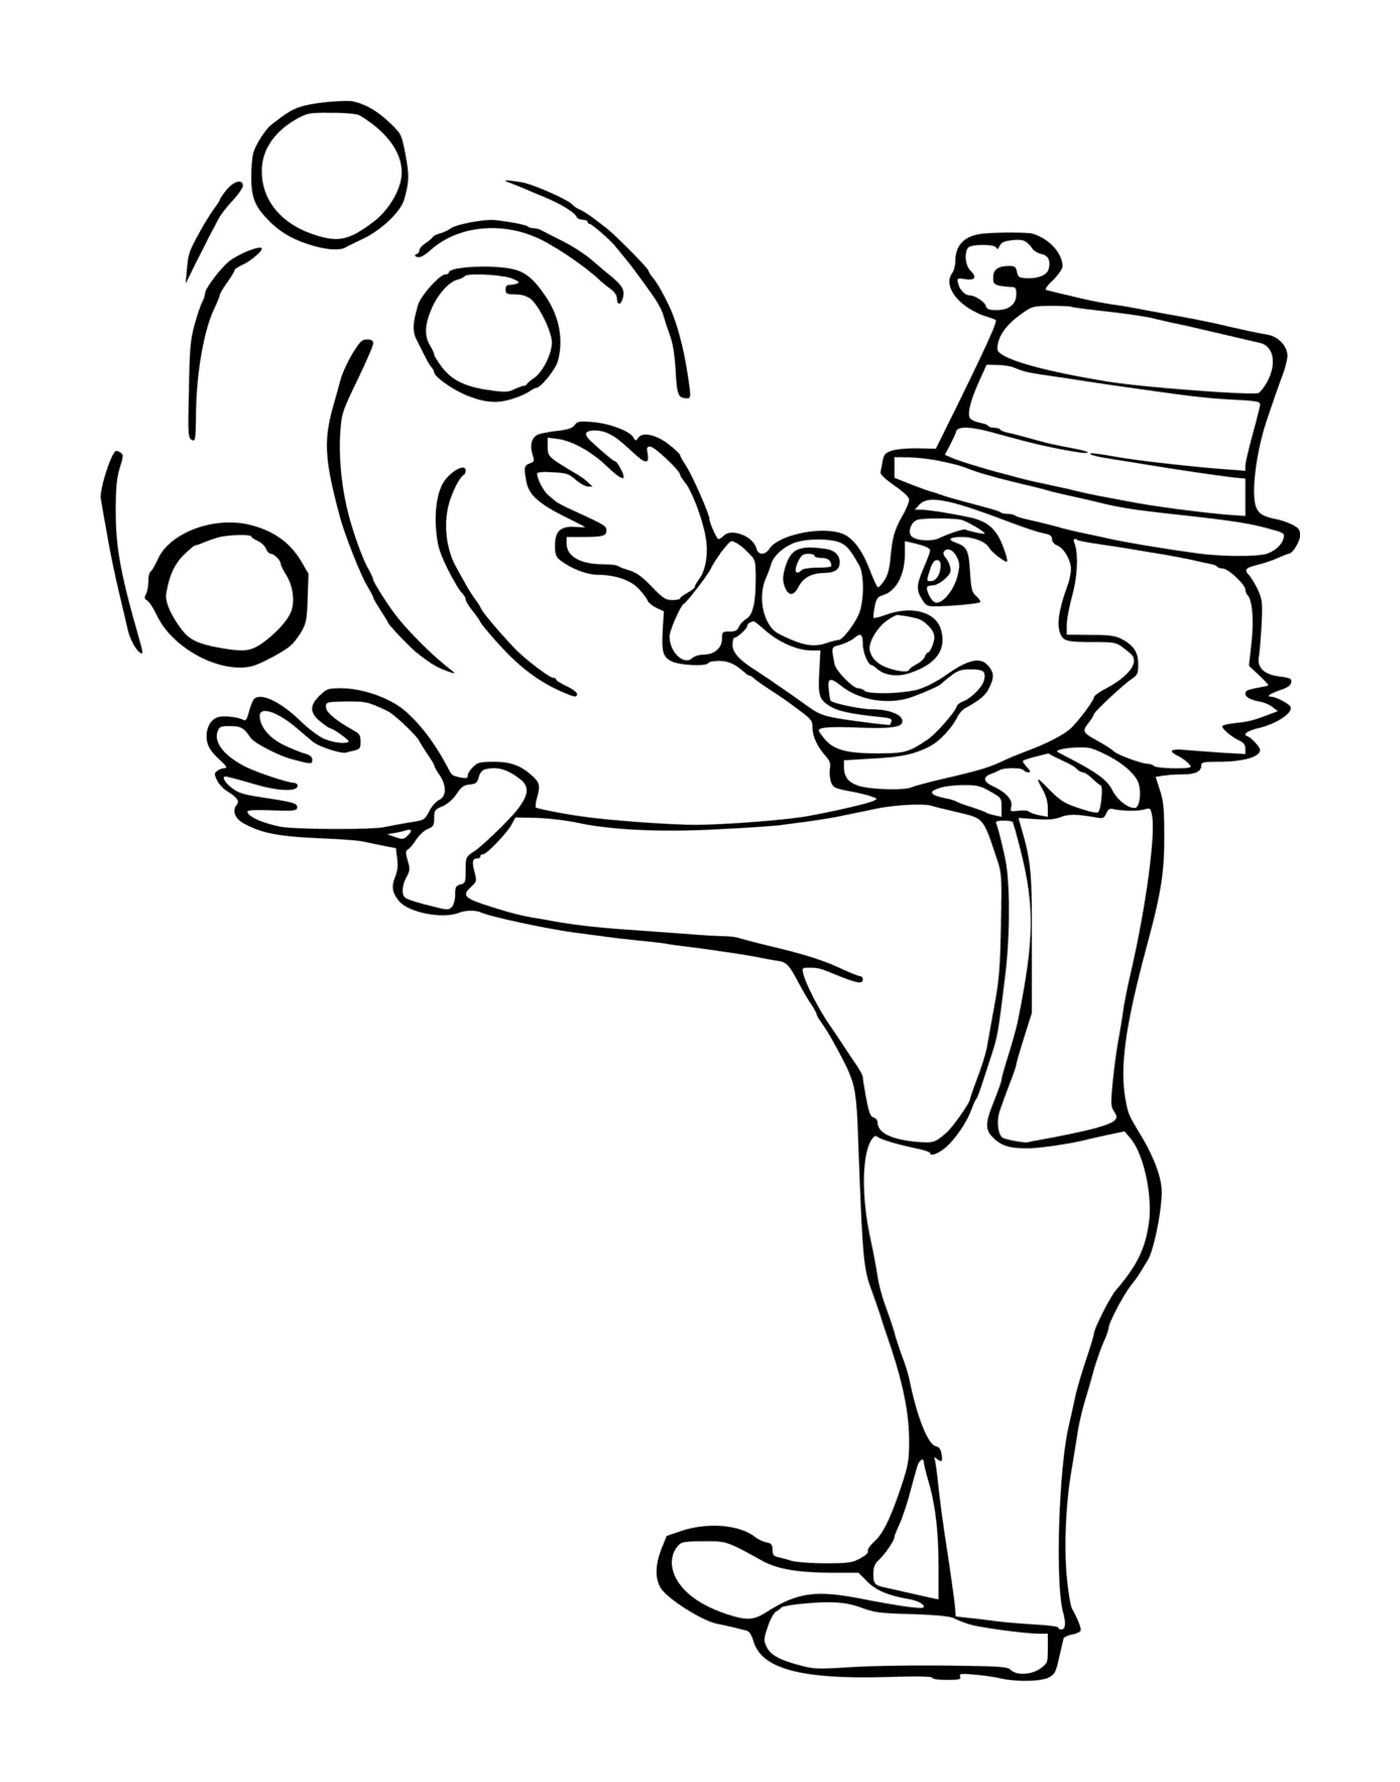   Clown jongleur avec des balles en l'air 